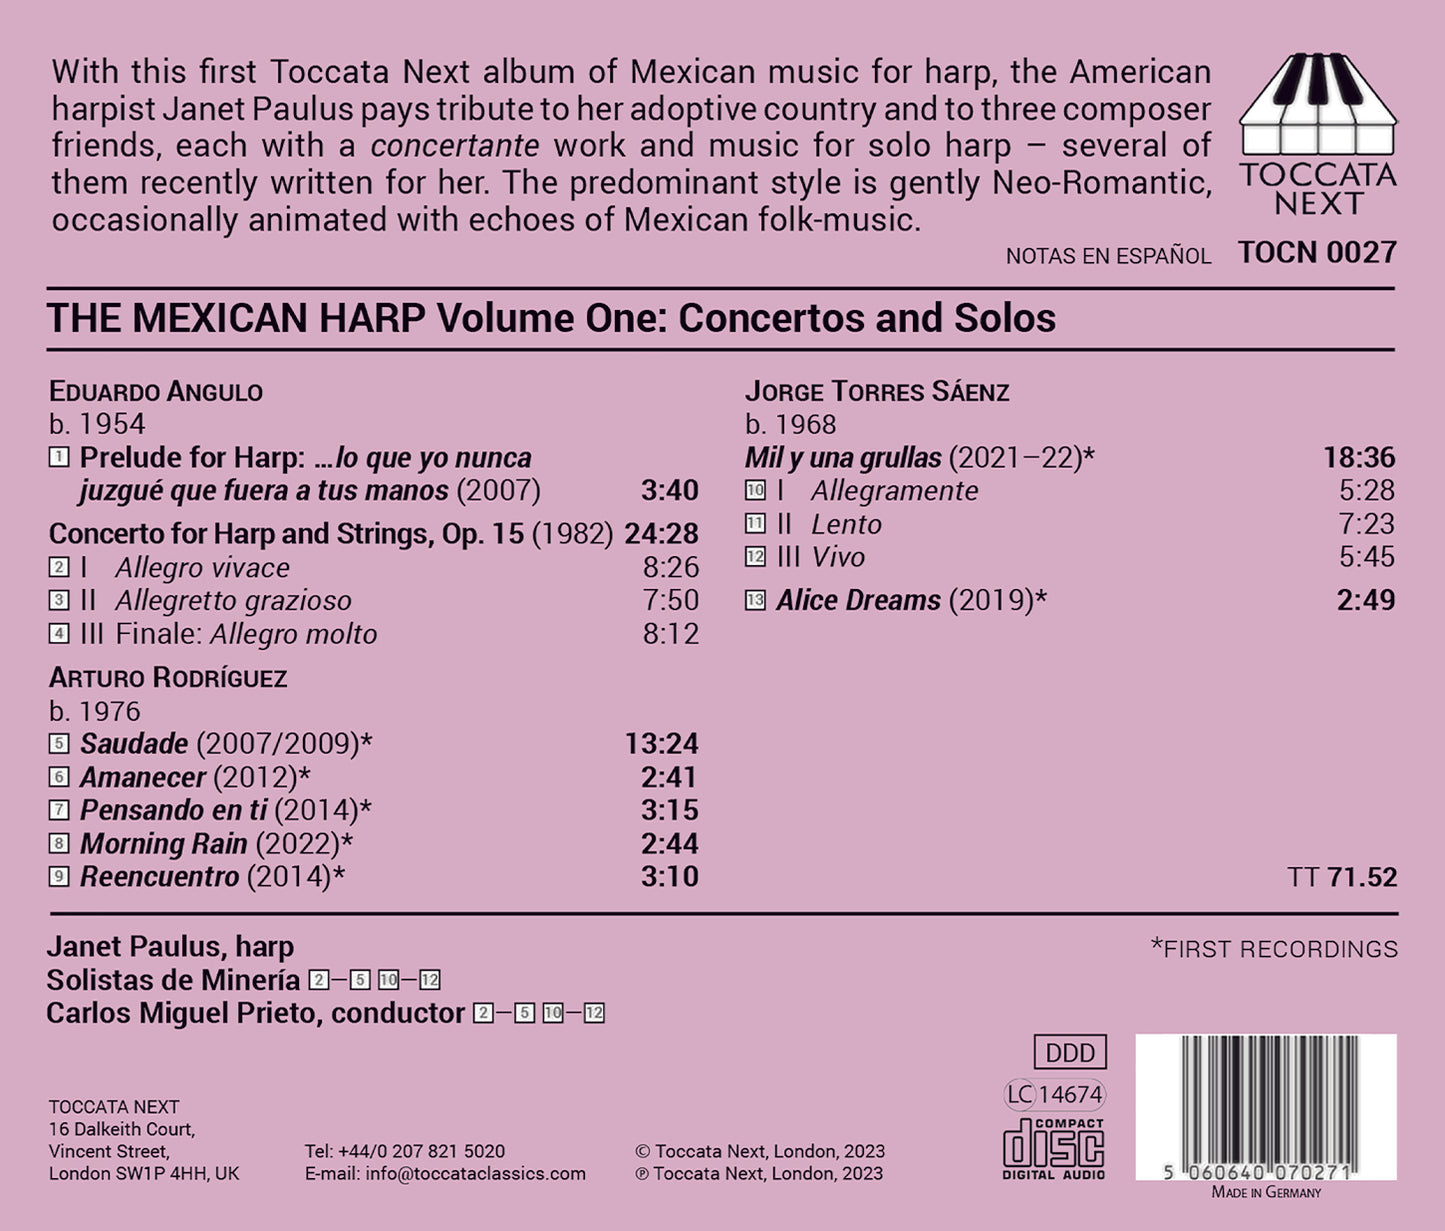 The Mexican Harp, Vol. 1 - Concertos & Solos